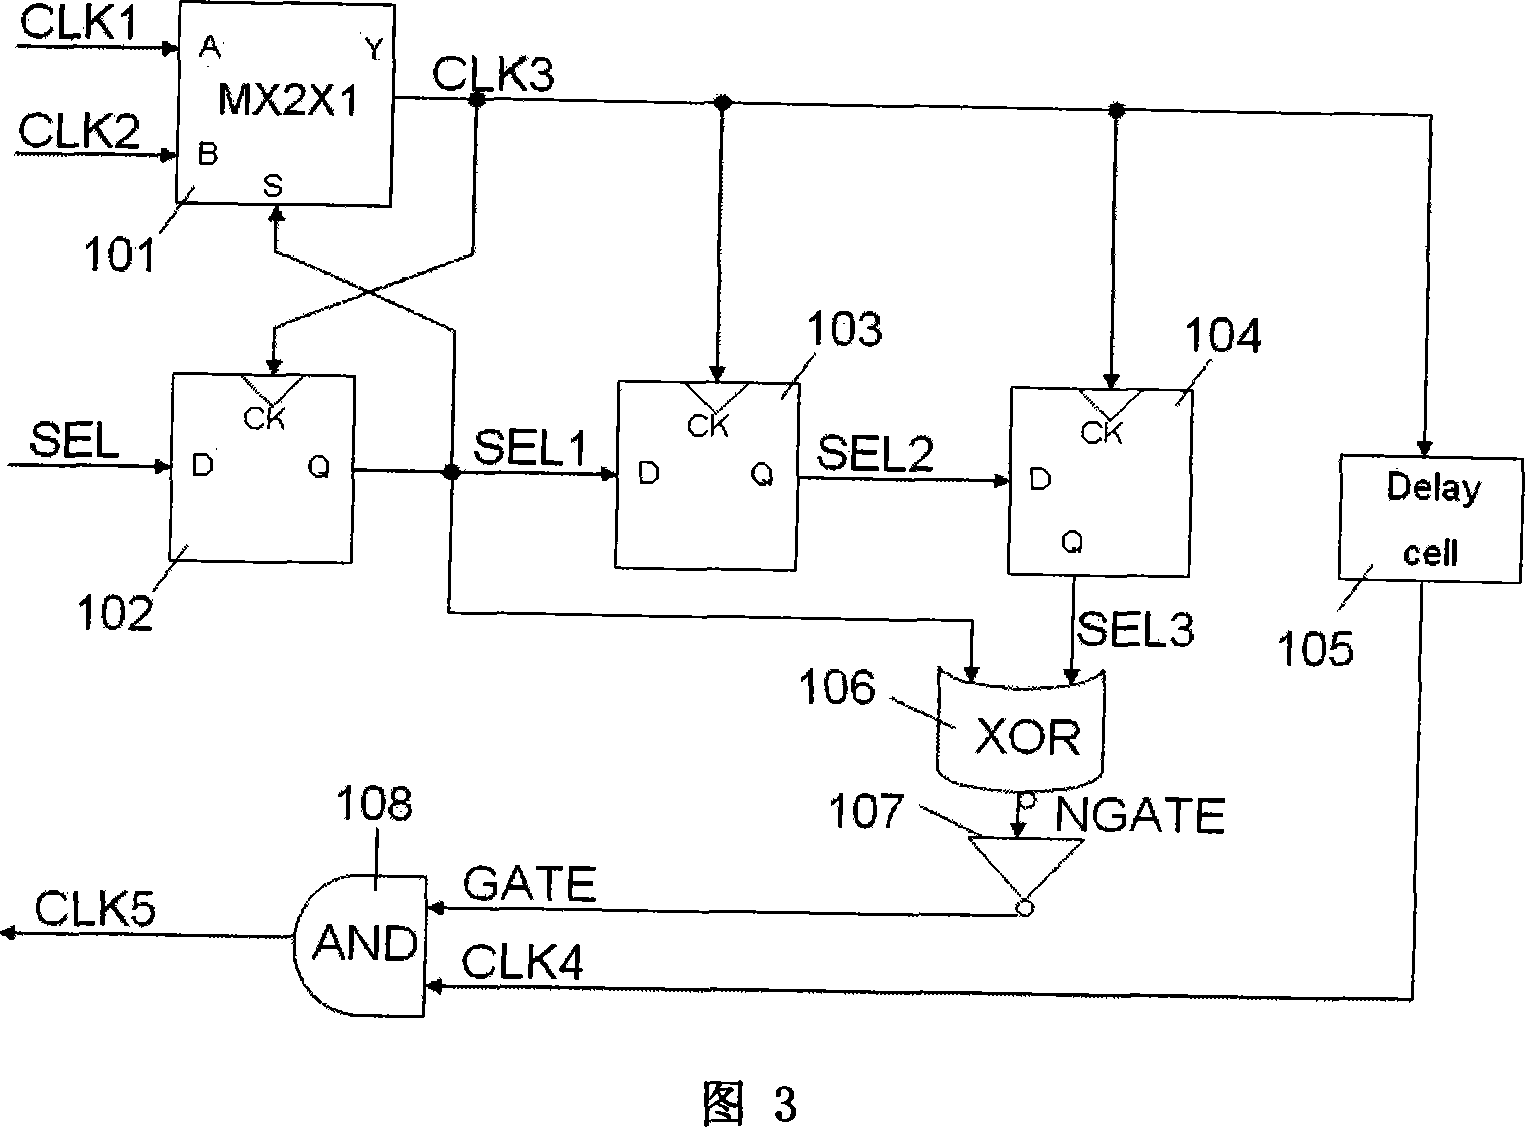 Clock switching circuit